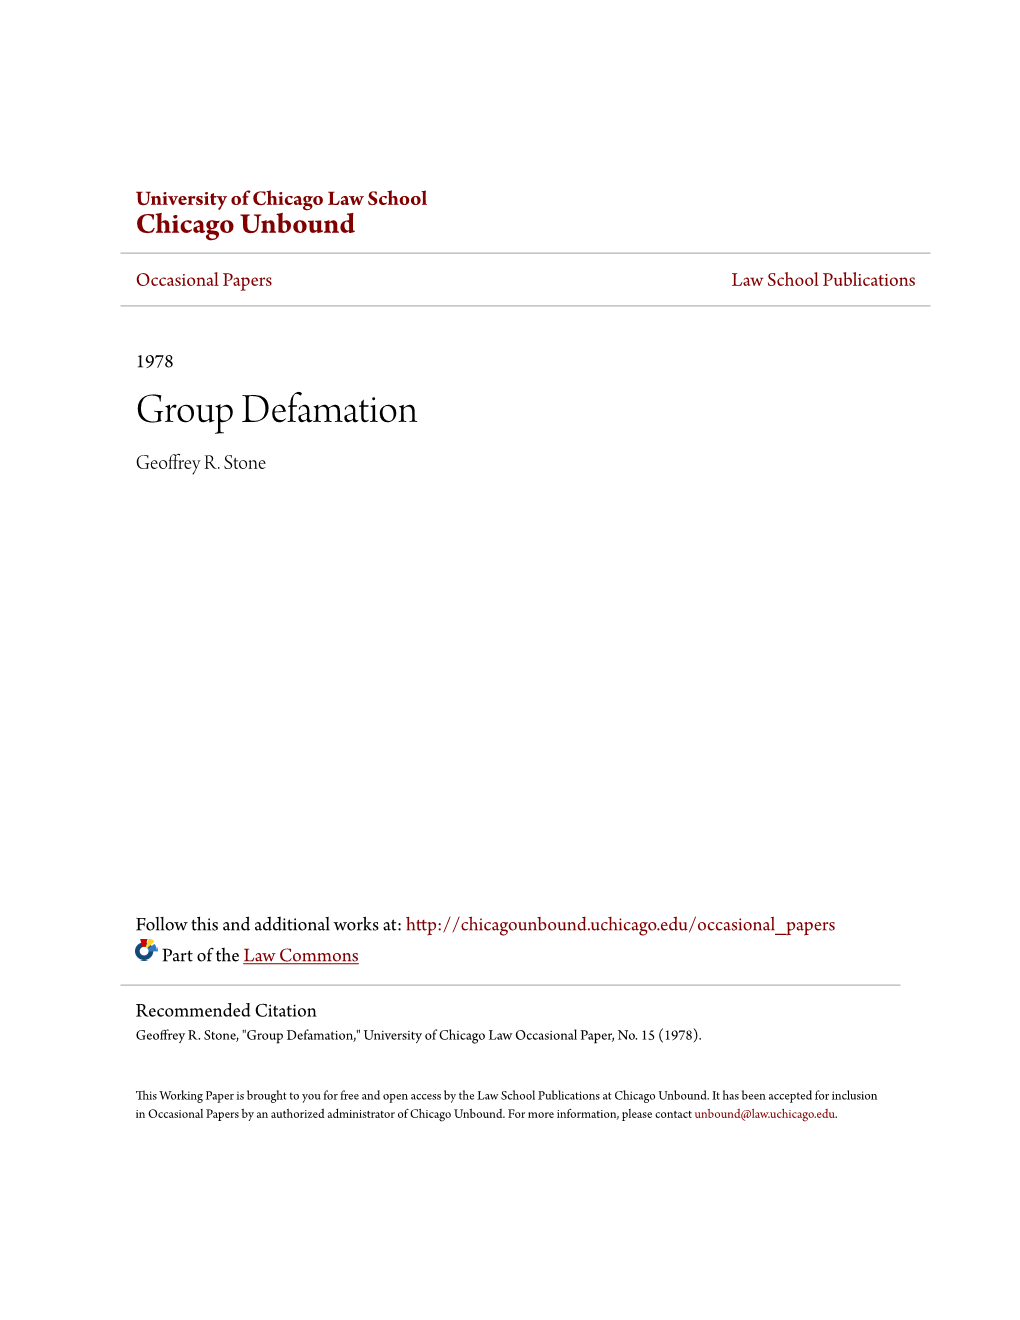 Group Defamation Geoffrey R